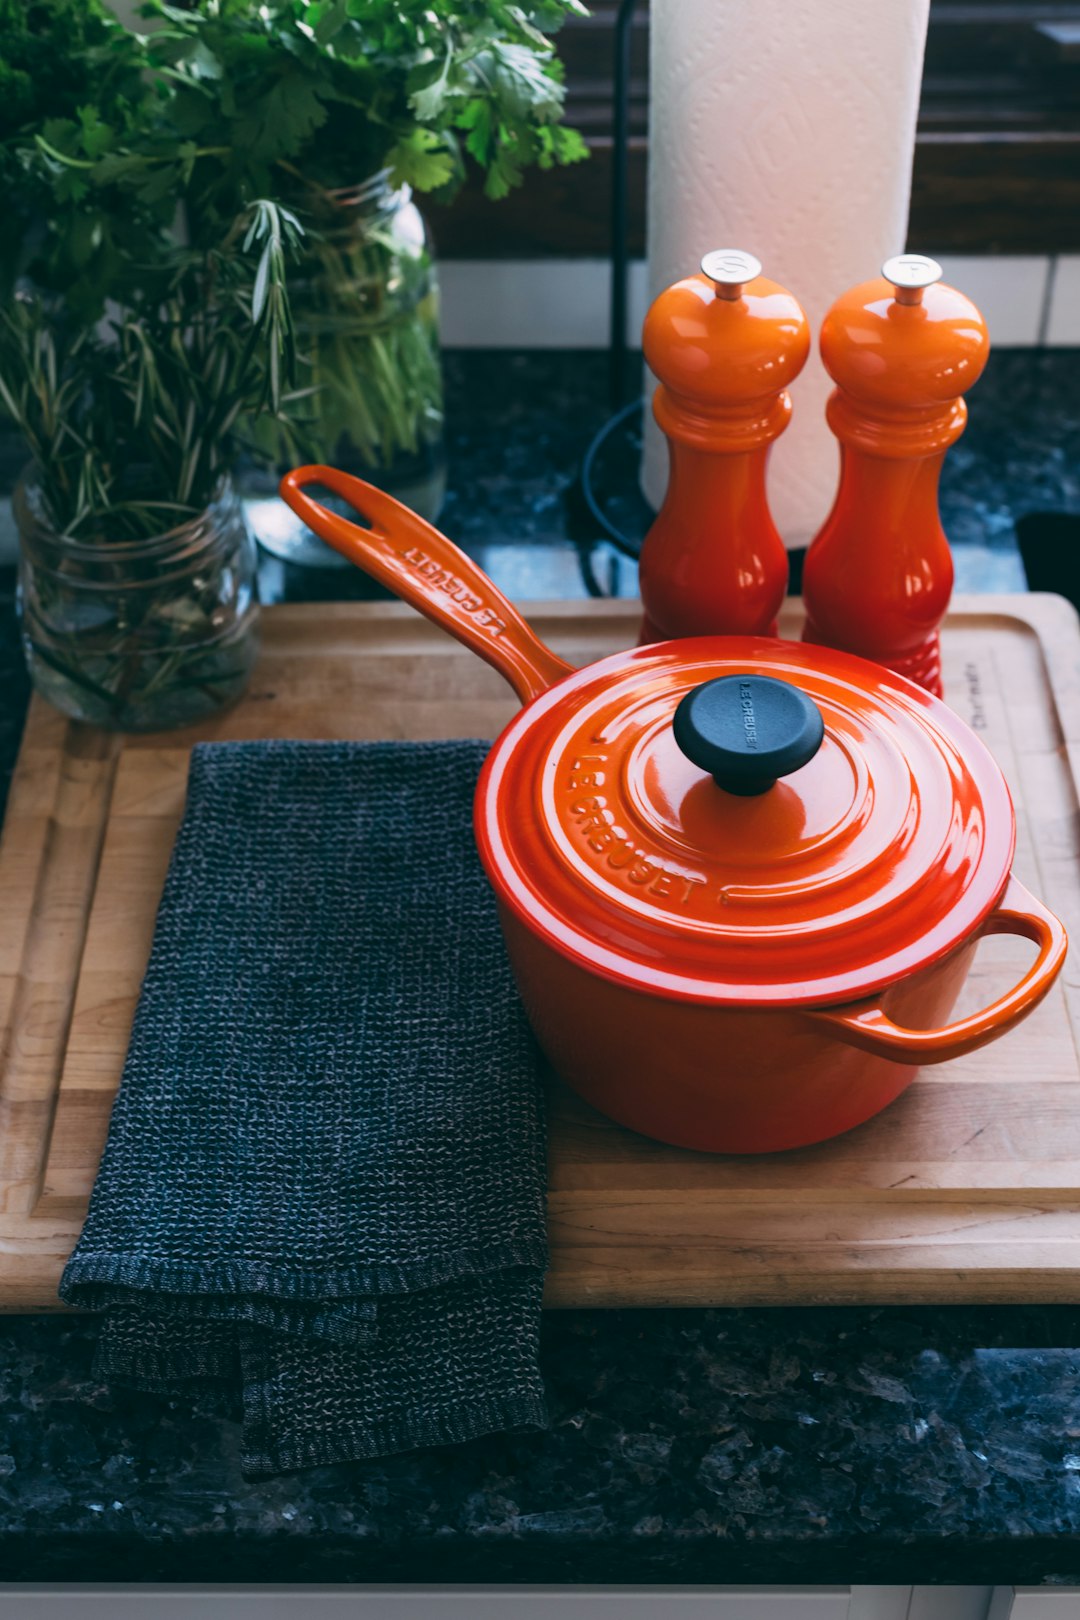  round orange pot pot container utensils